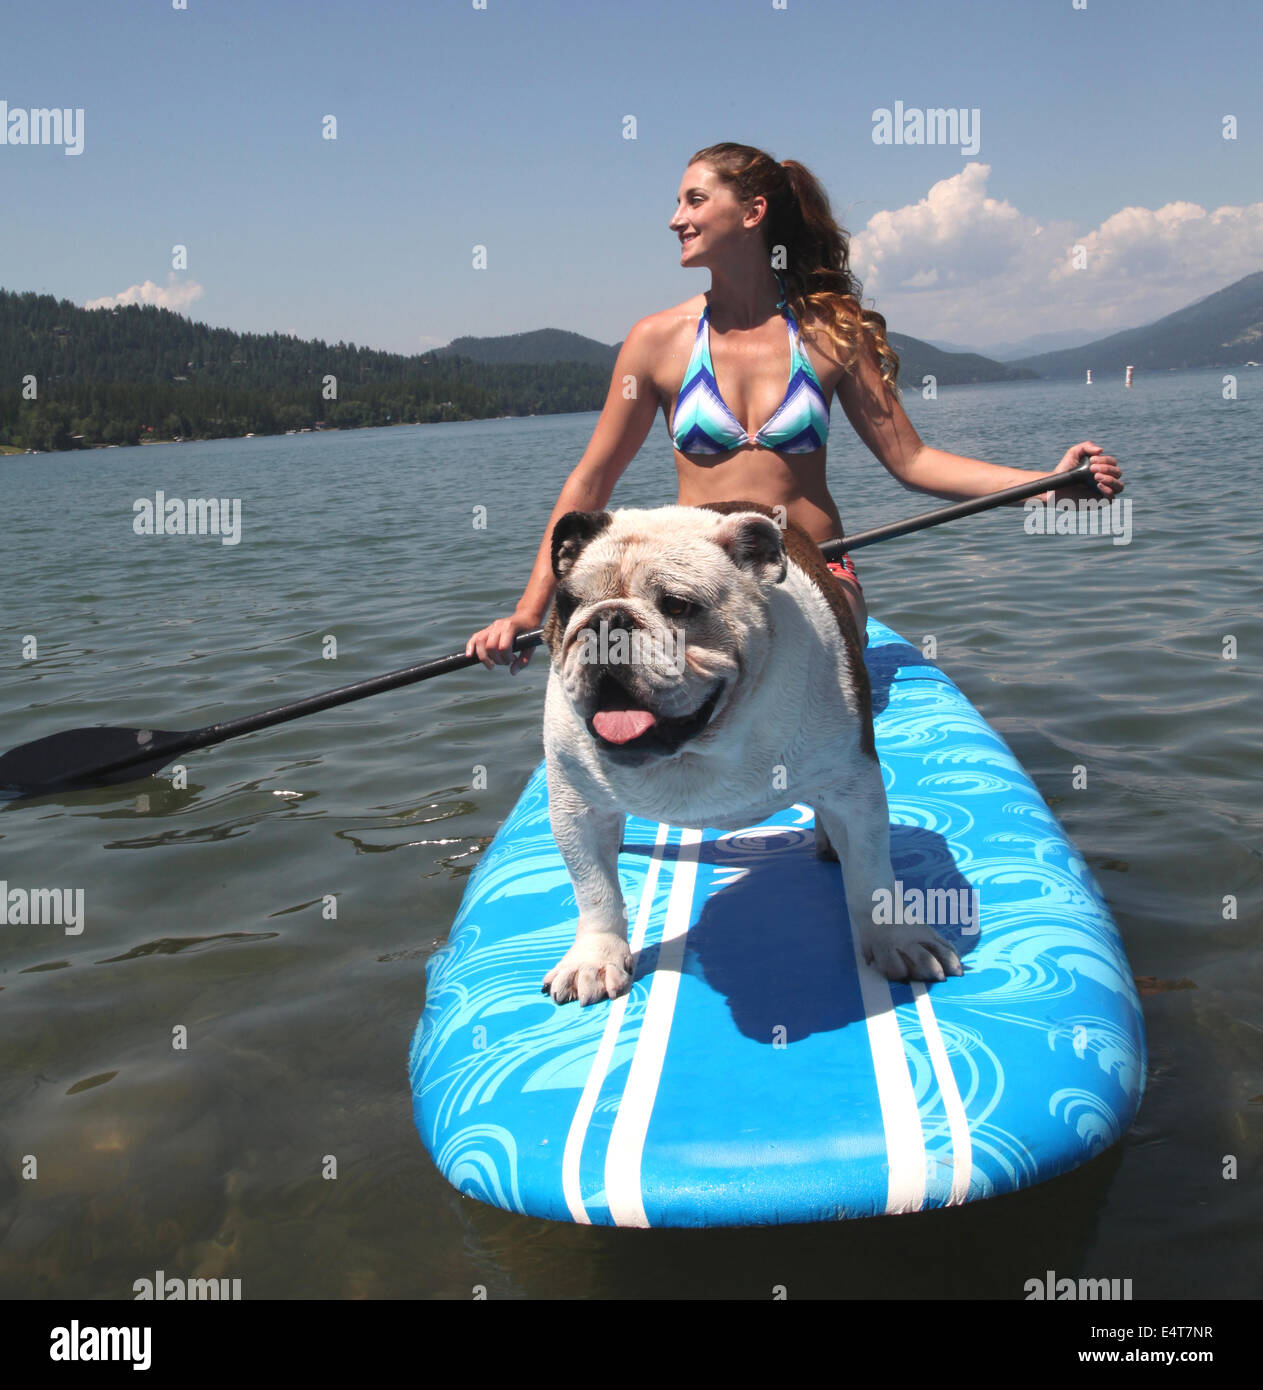 Bull dog riding on paddle board at lake. Stock Photo